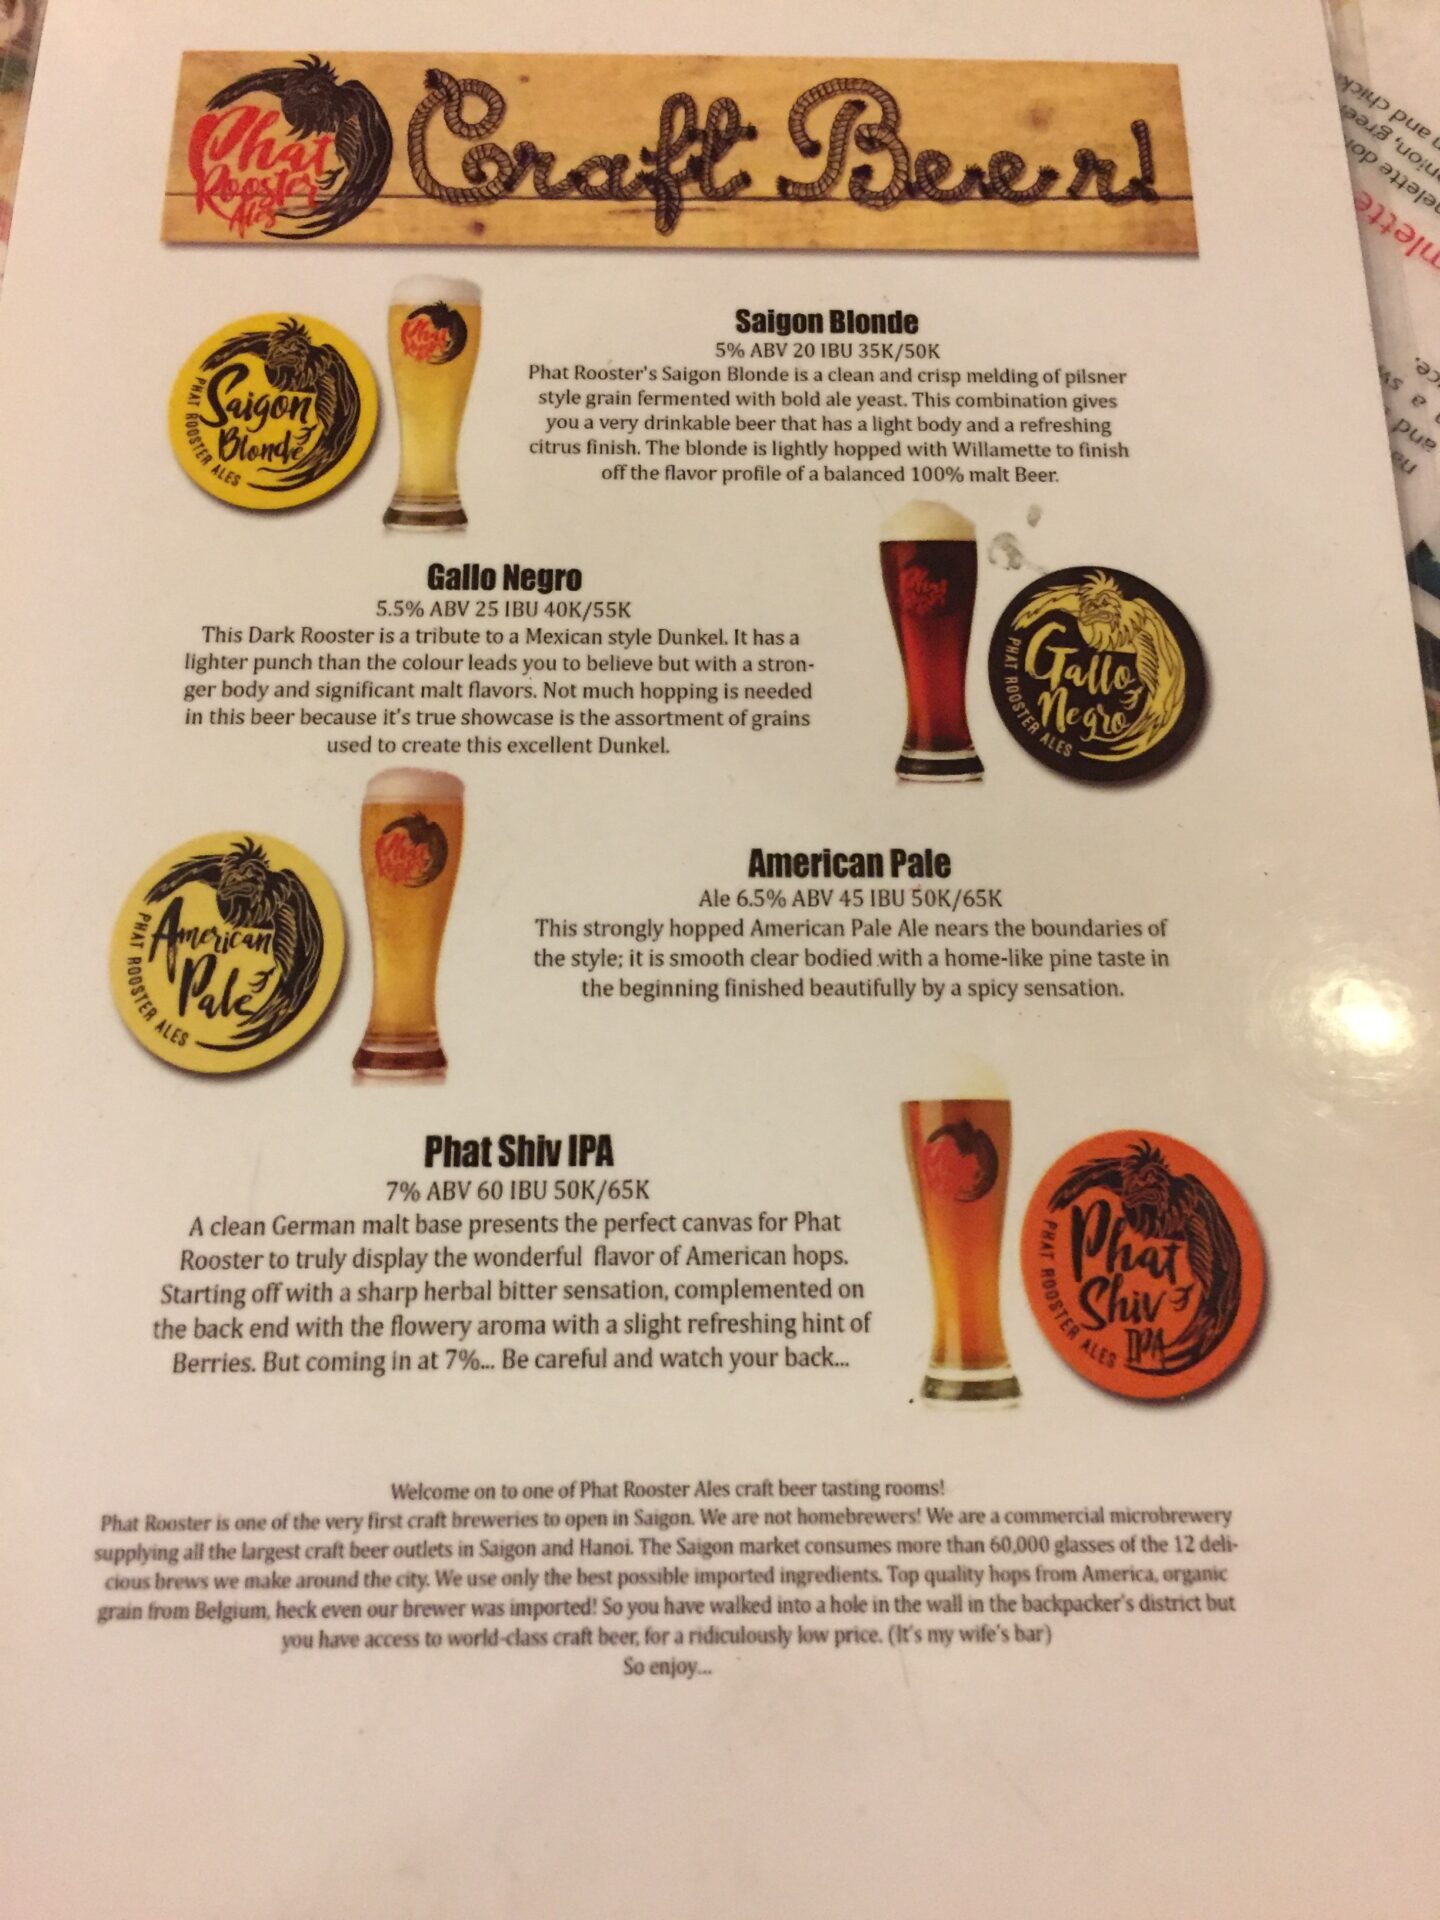 beer menu of Craft Beer in Vietnam